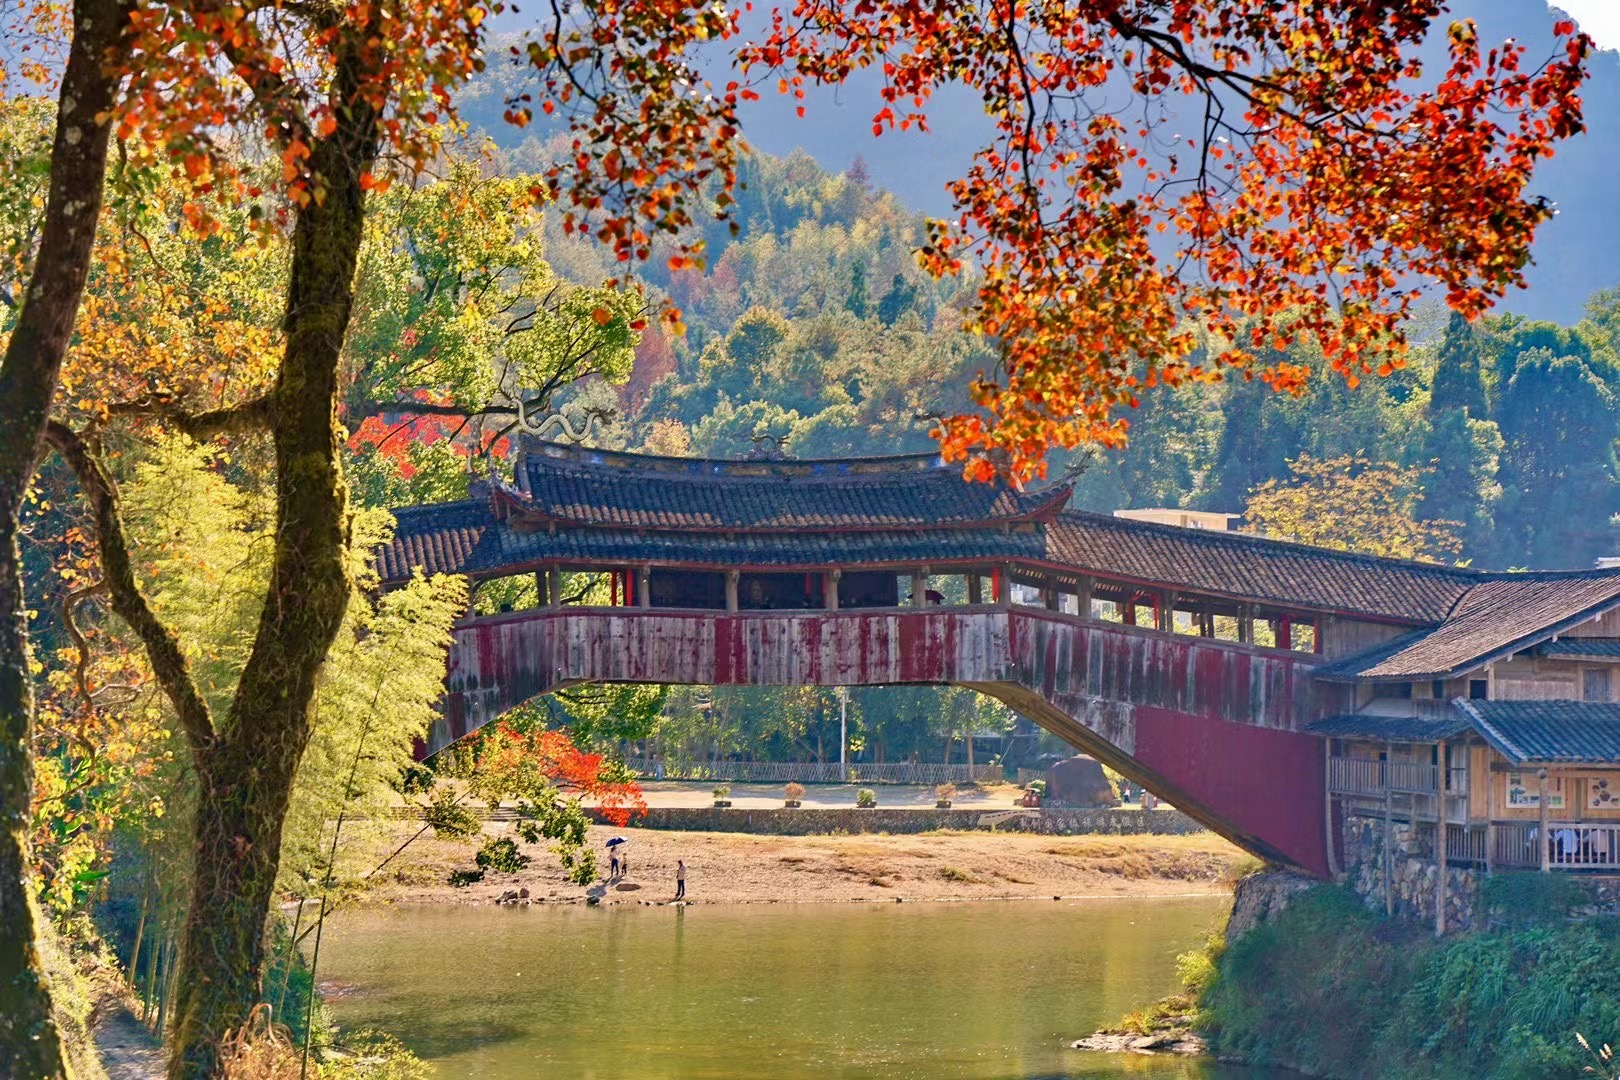 美丽小镇泗溪,秋天美出天际,世界最美廊桥北涧桥的乌桕树红了